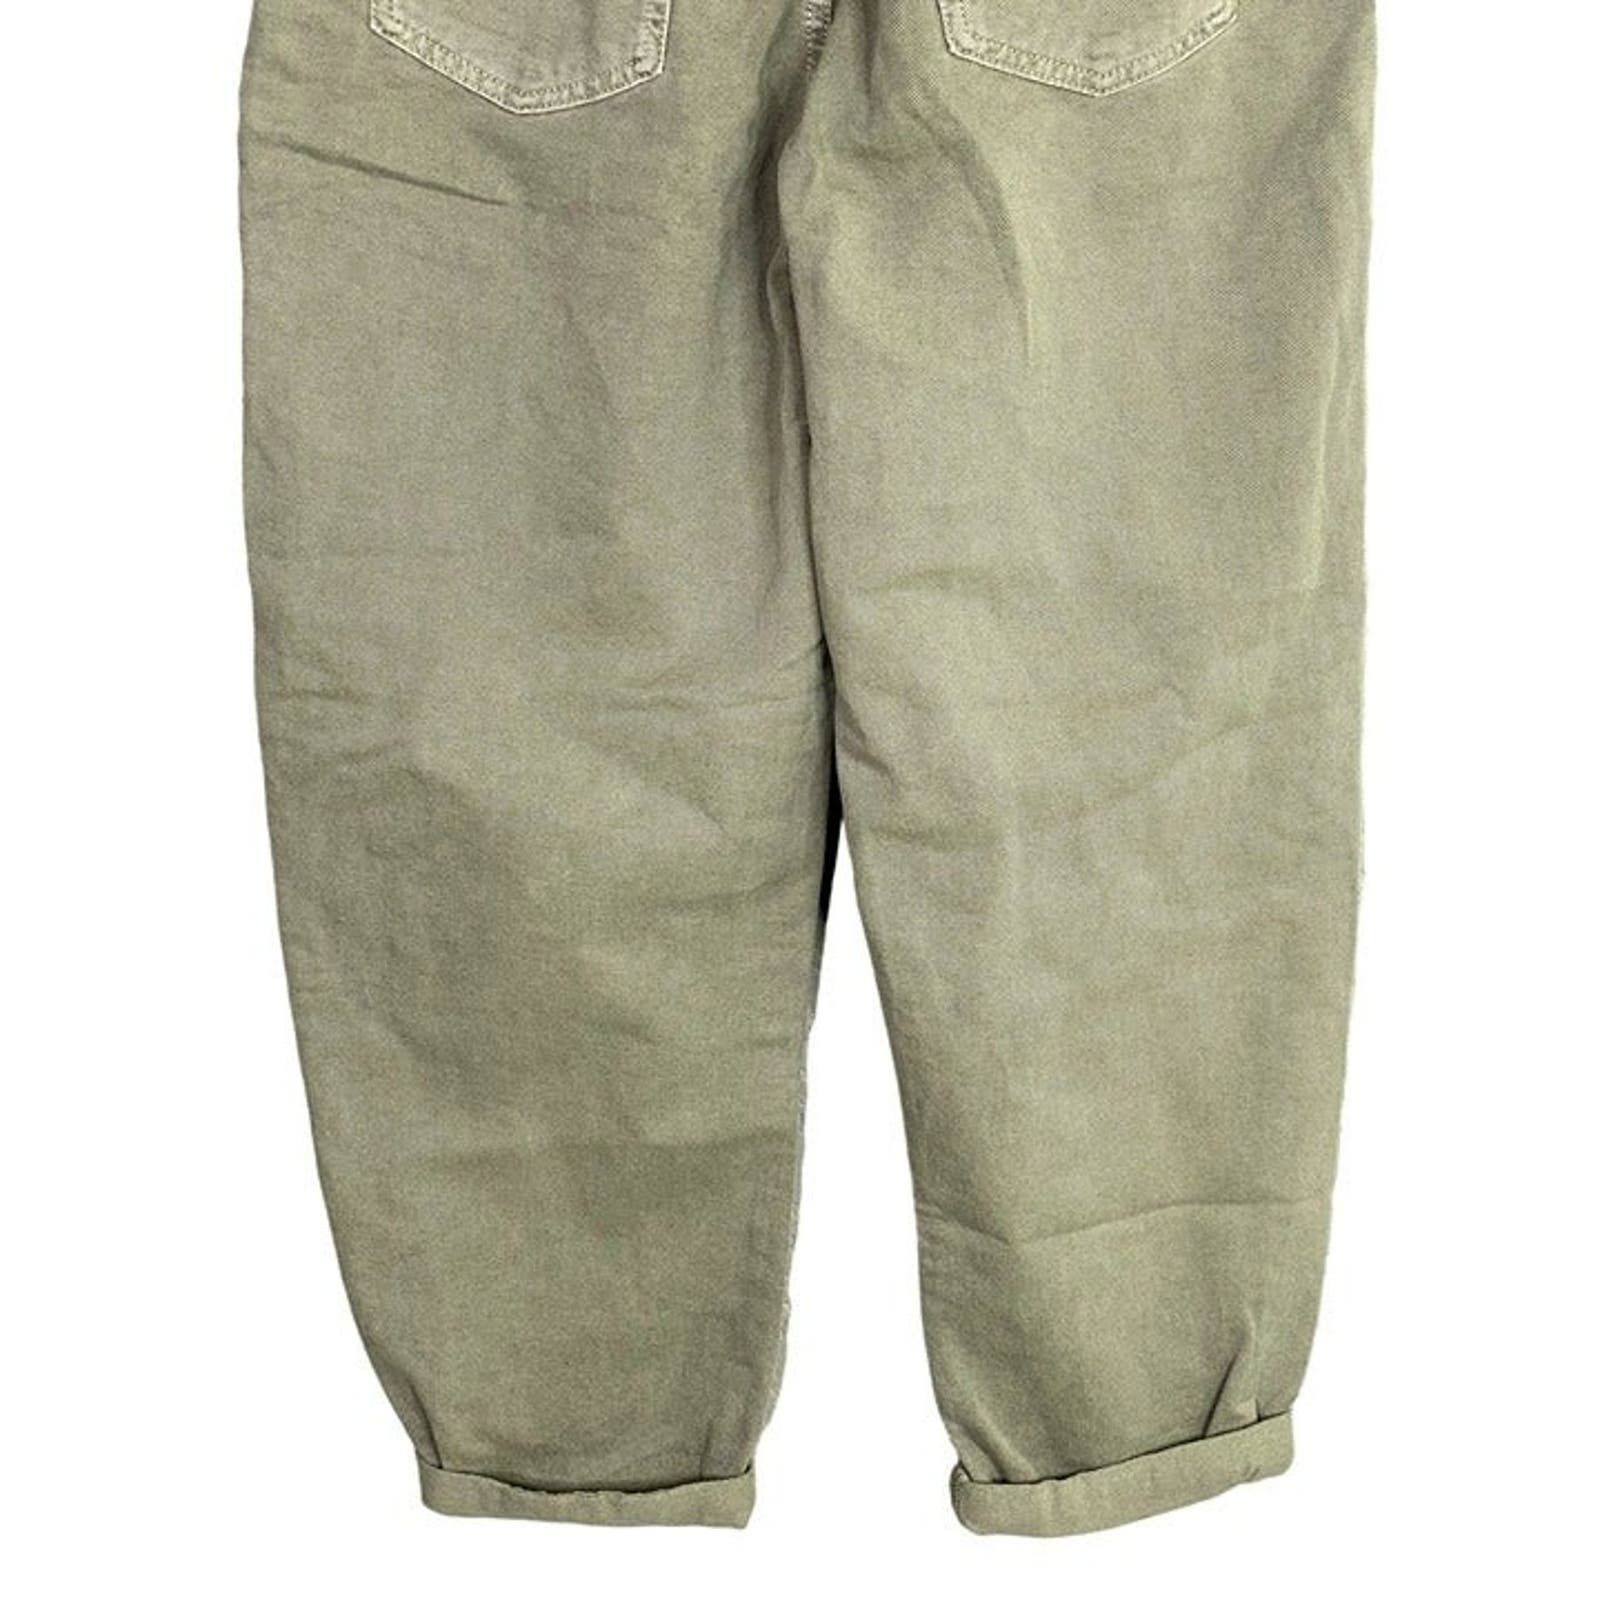 Zara Zara Paper Bag Relaxed Baggy Jeans Pants 29 Khaki Green Size 29" - 12 Preview